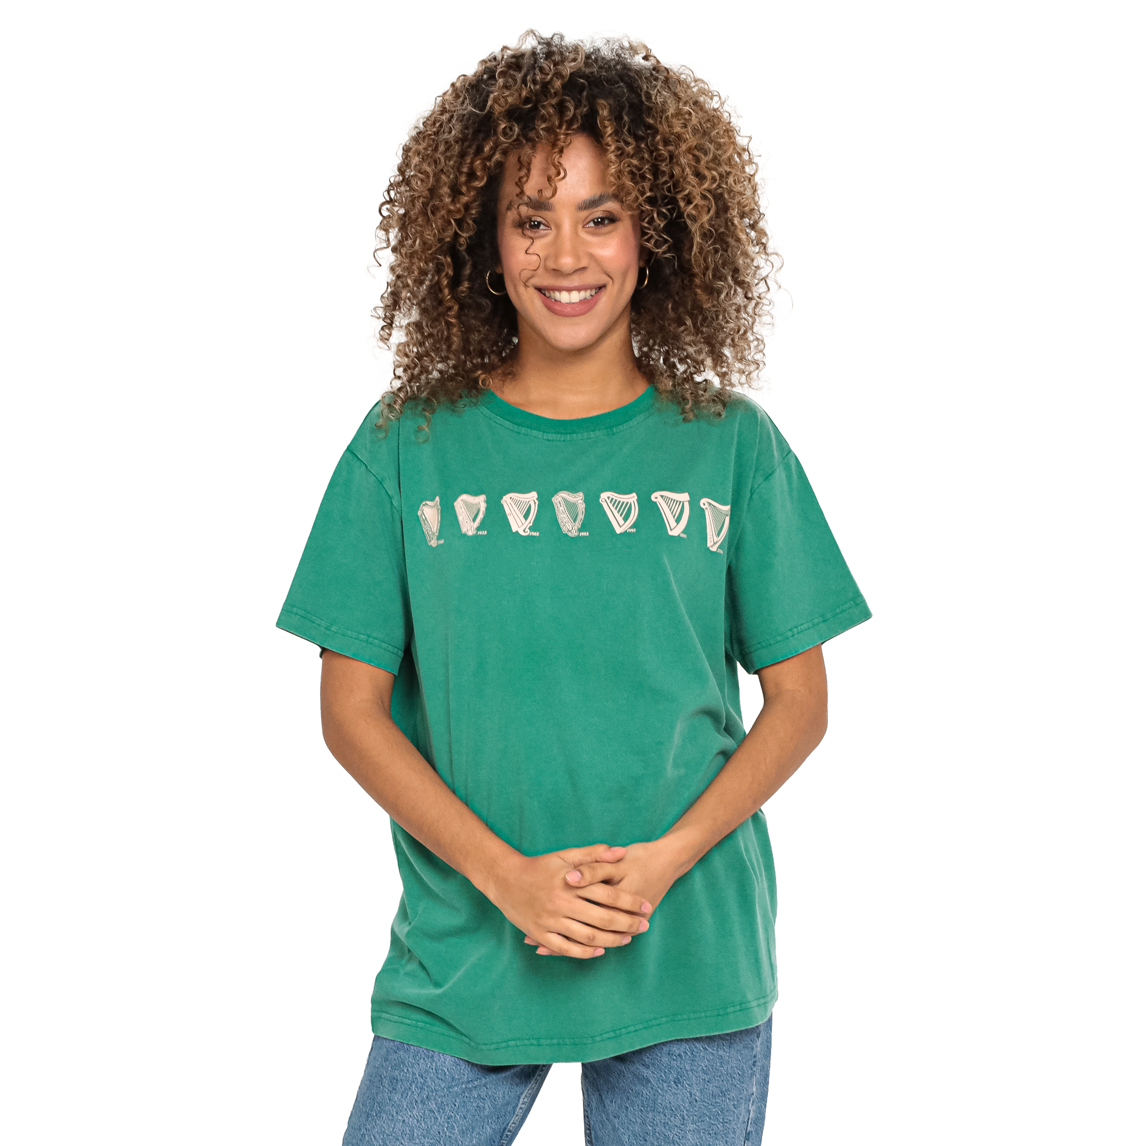 A woman wearing a green Guinness Evolution Harp Green T-shirt.